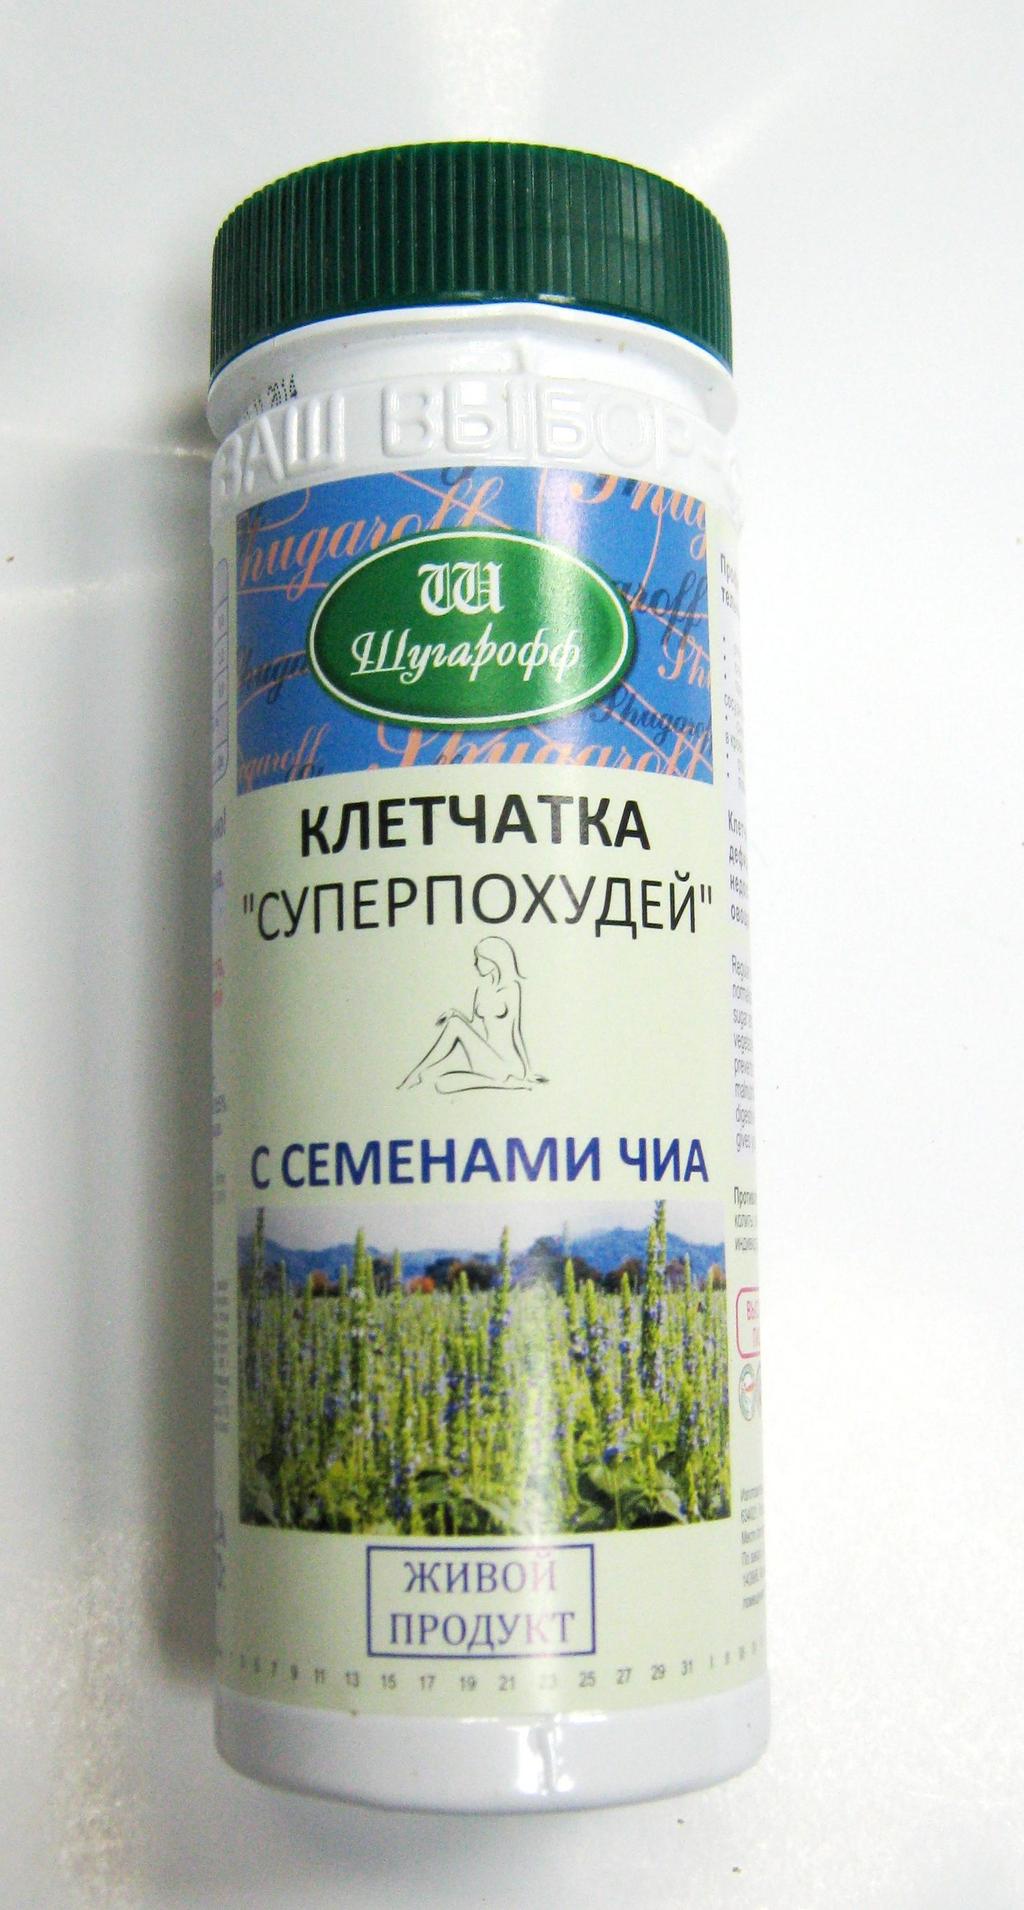 Шугарофф Клетчатка Суперпохудей семена Чиа 170 г